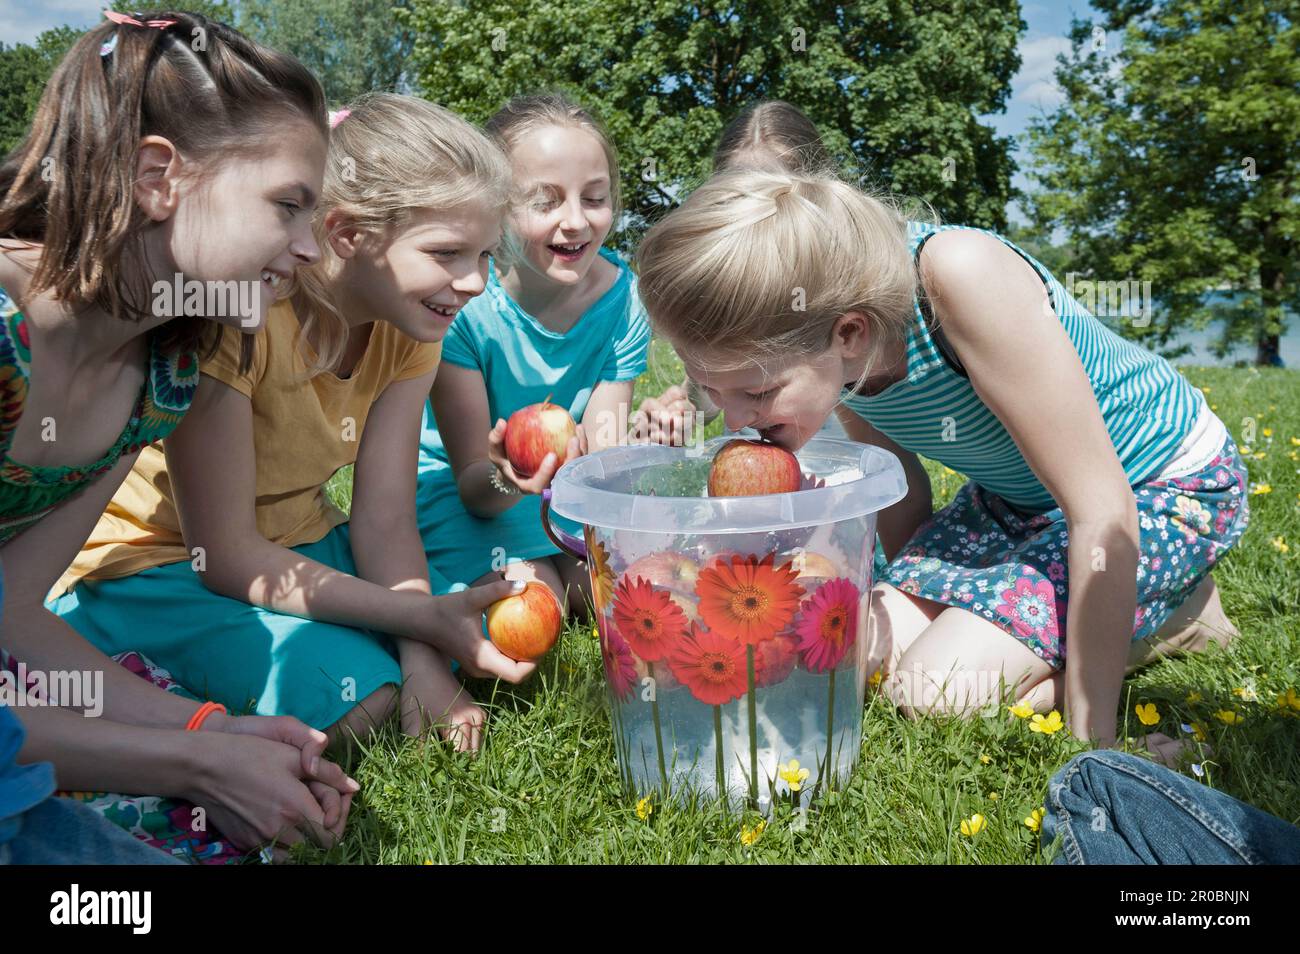 Ein Mädchen, das Apfel mit dem Mund aus einem Eimer nehmen will, München, Bayern, Deutschland Stockfoto